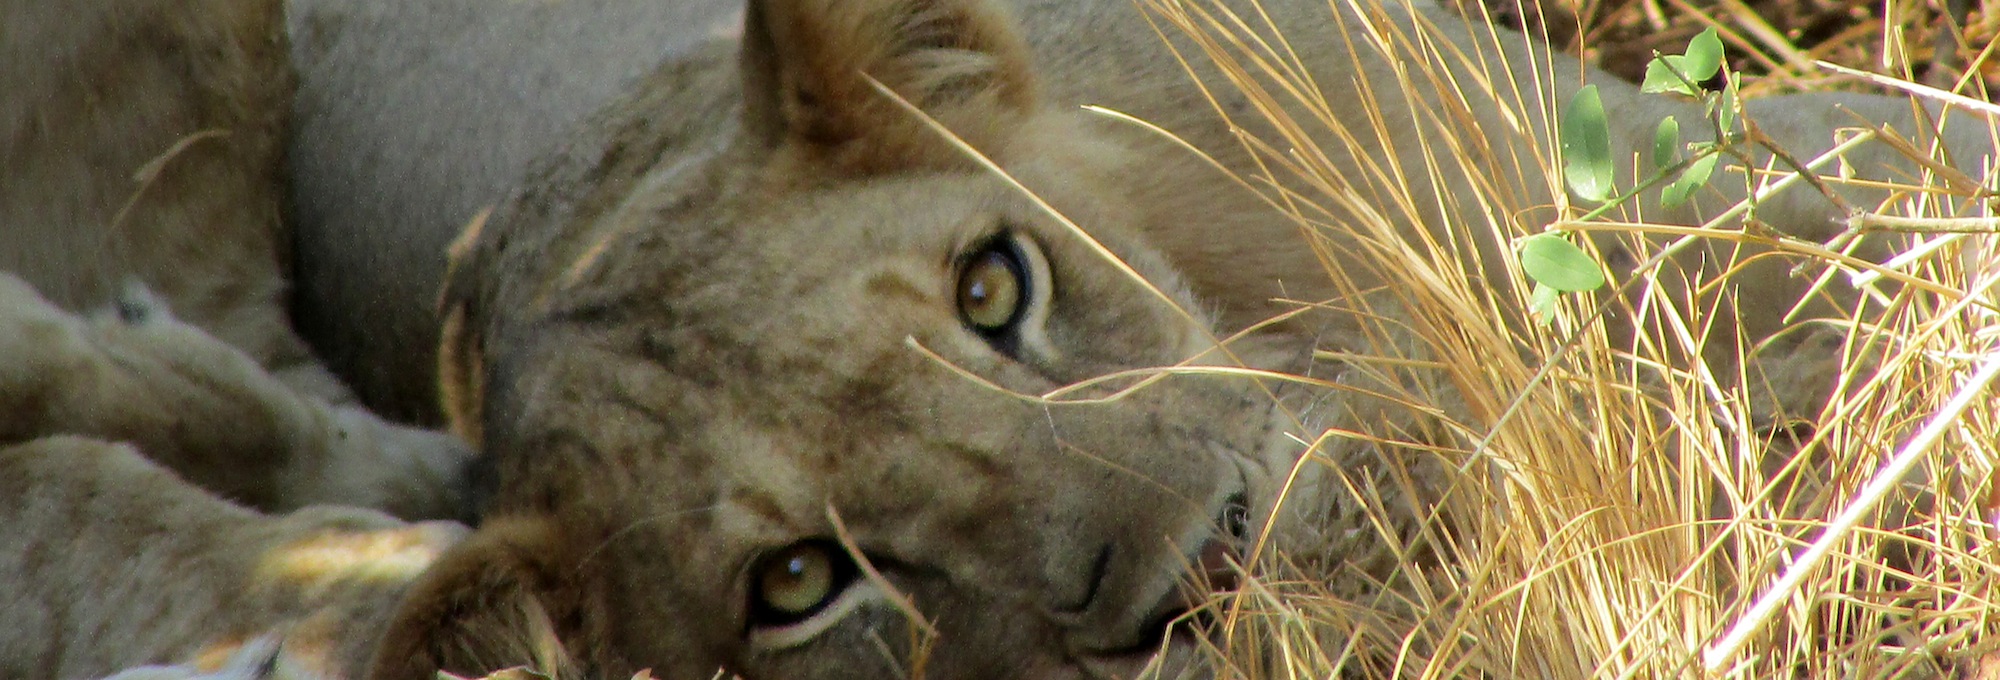 El instante en el que una leona de la sabana africana clava su mirada penetrante en la tuya...